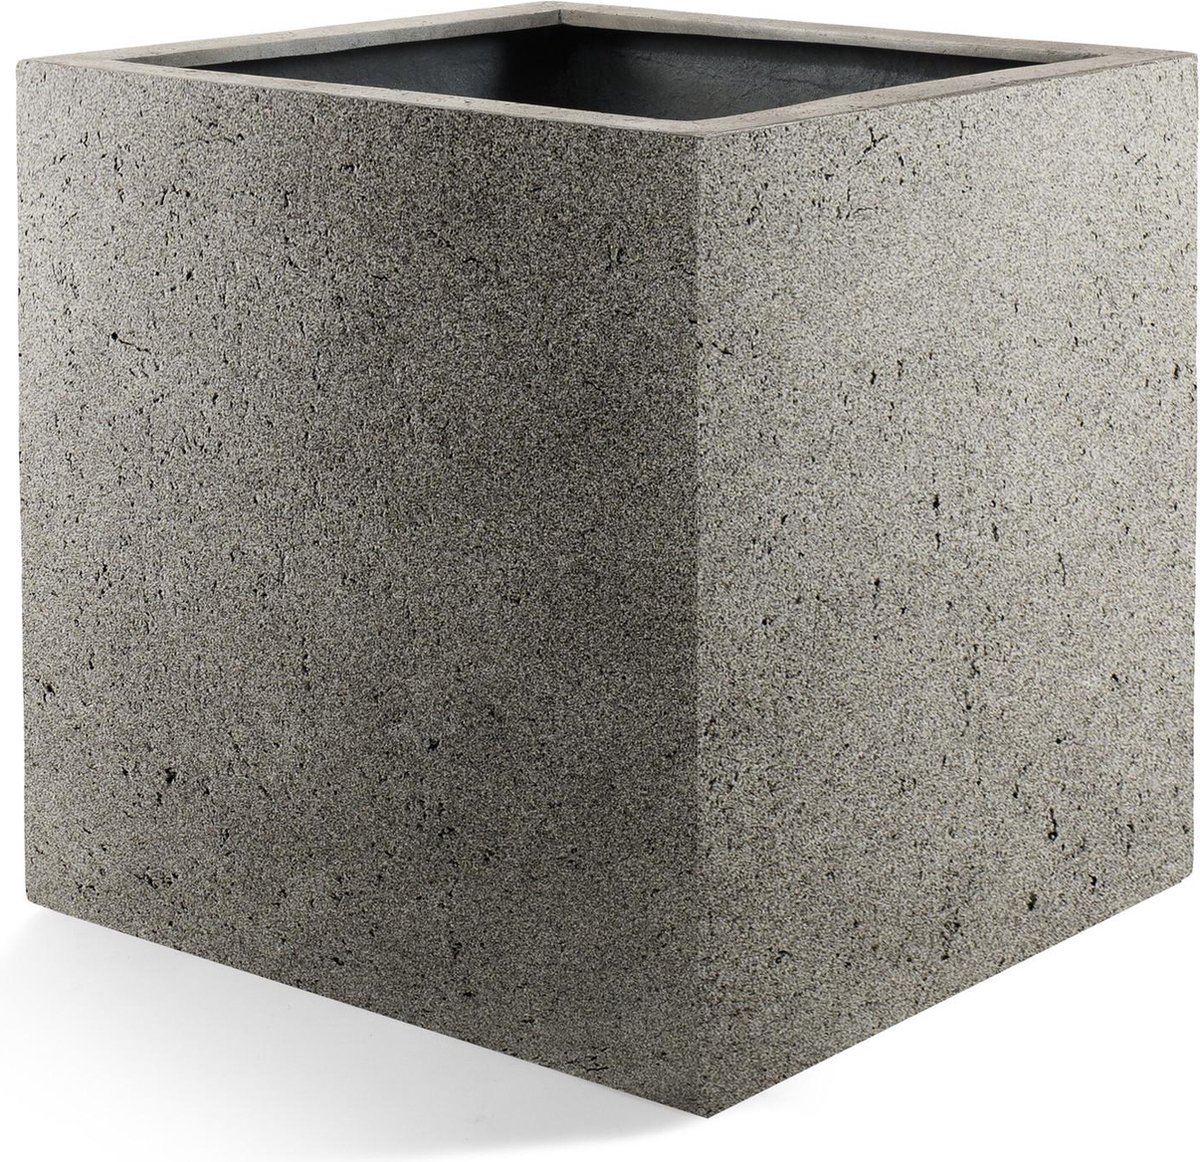 Pot Grigio Low Cube Natural Concrete - D80 x H60